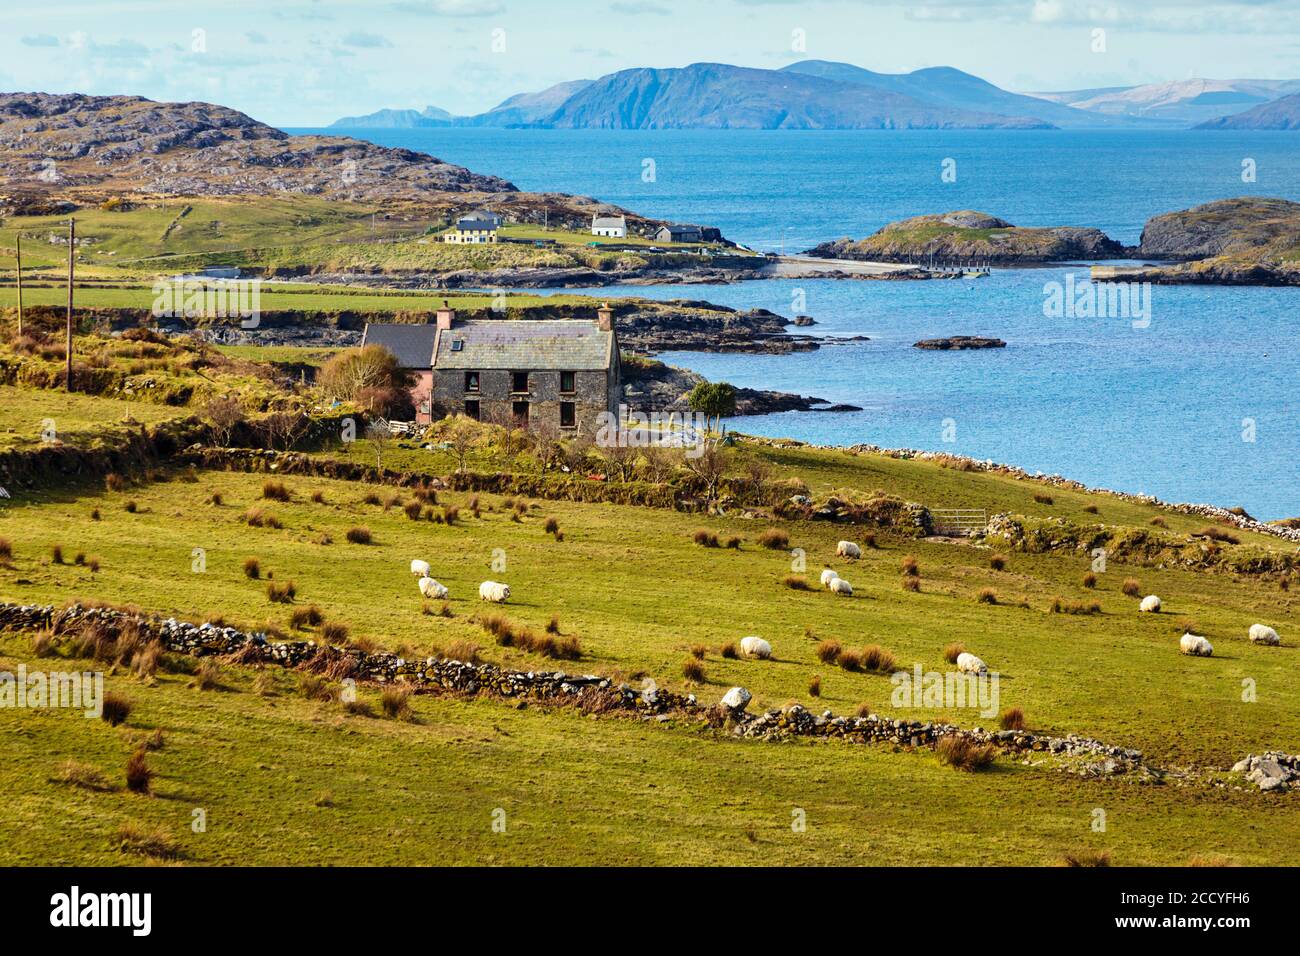 Typische Landschaft auf der Beare Halbinsel, dem Ring of Beare, Grafschaft Cork, West Cork, Republik Irland. Irland. Stockfoto